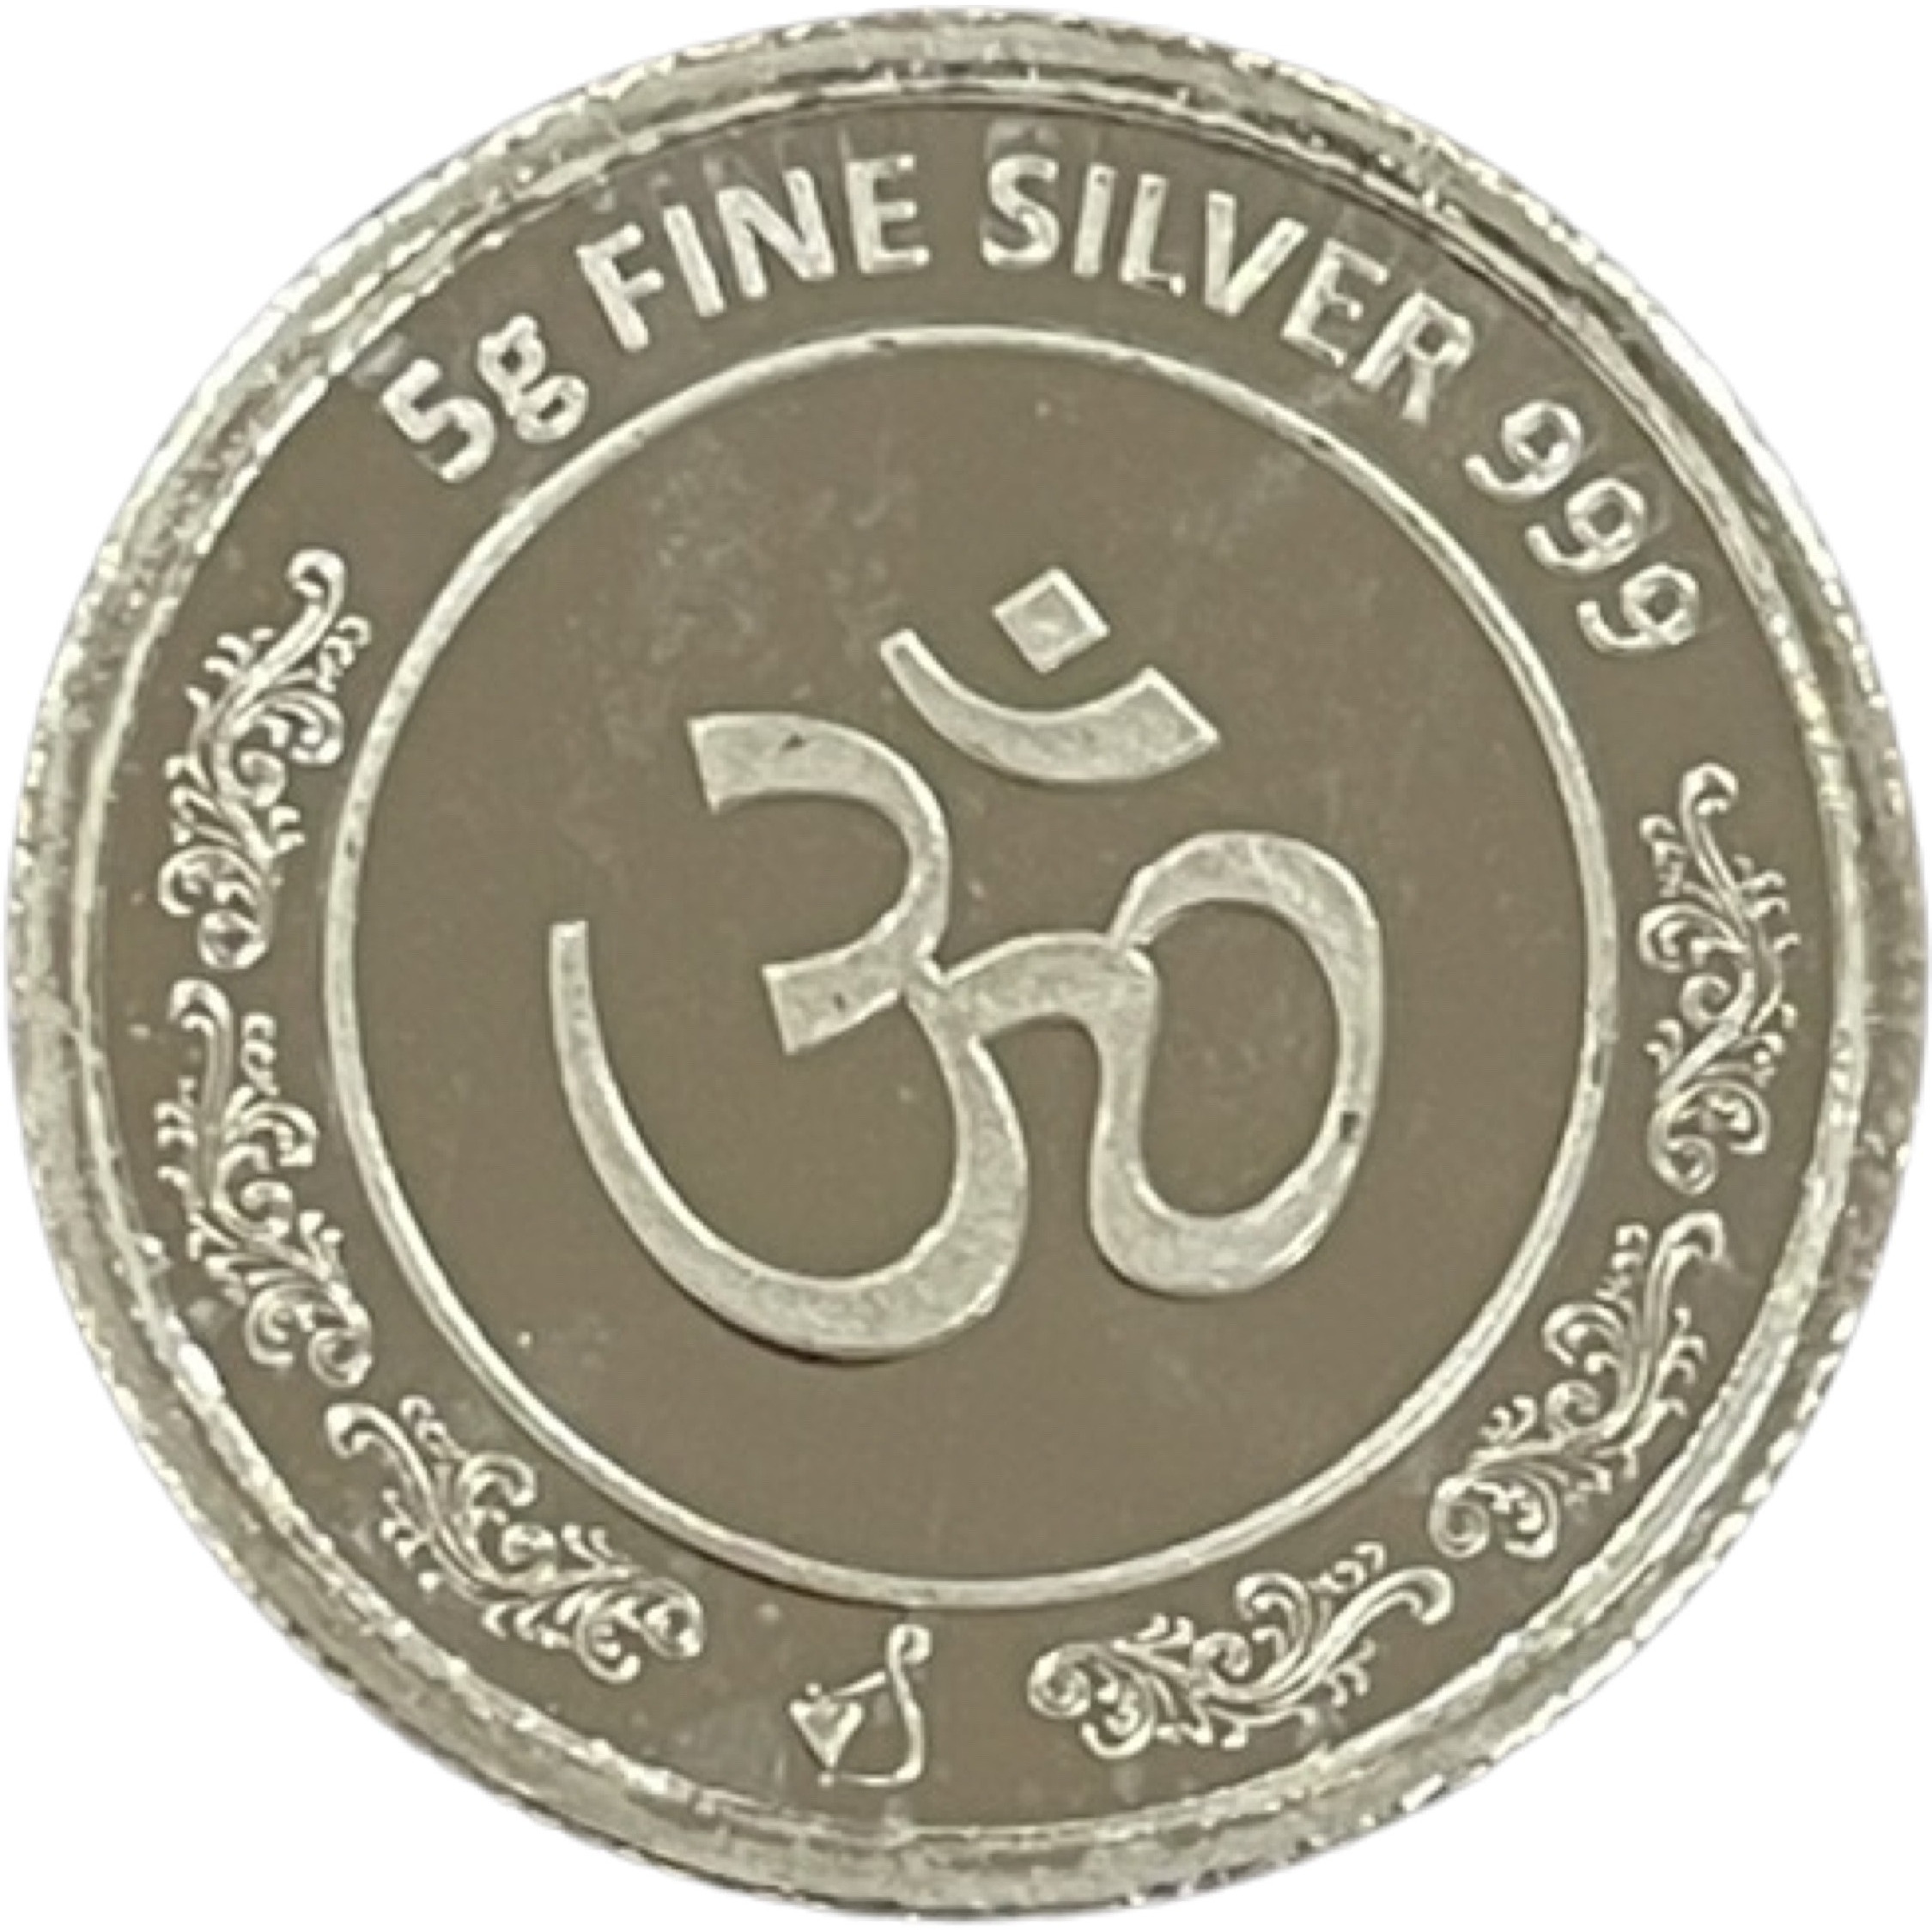 Ganesha Lakshmi/Laxmi Pure Silver (999) 5 Grams Coin (Shipping: EXPEDITED SHIPPING (2-3 DAYS)+$12.99)